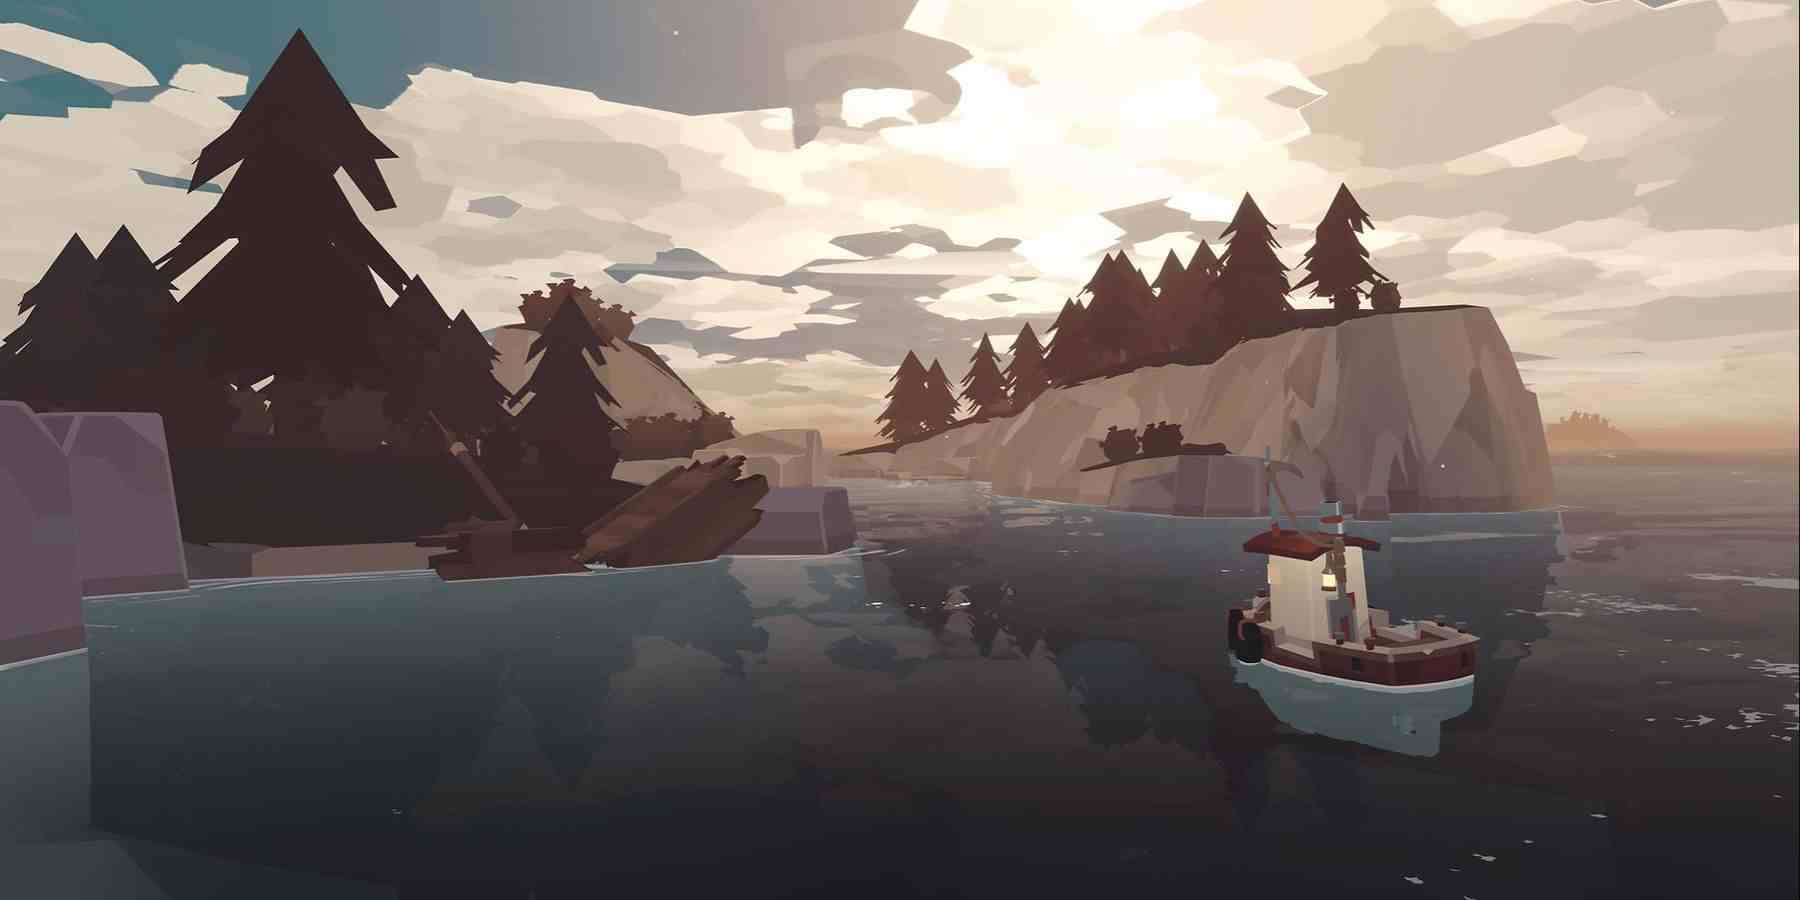 Video oyunu Dredge'den bir görüntü, balıkçı teknesinin bir adaya yaklaştığını ve kısmen sahilde enkaz halindeki bir gemiyi gösteriyor